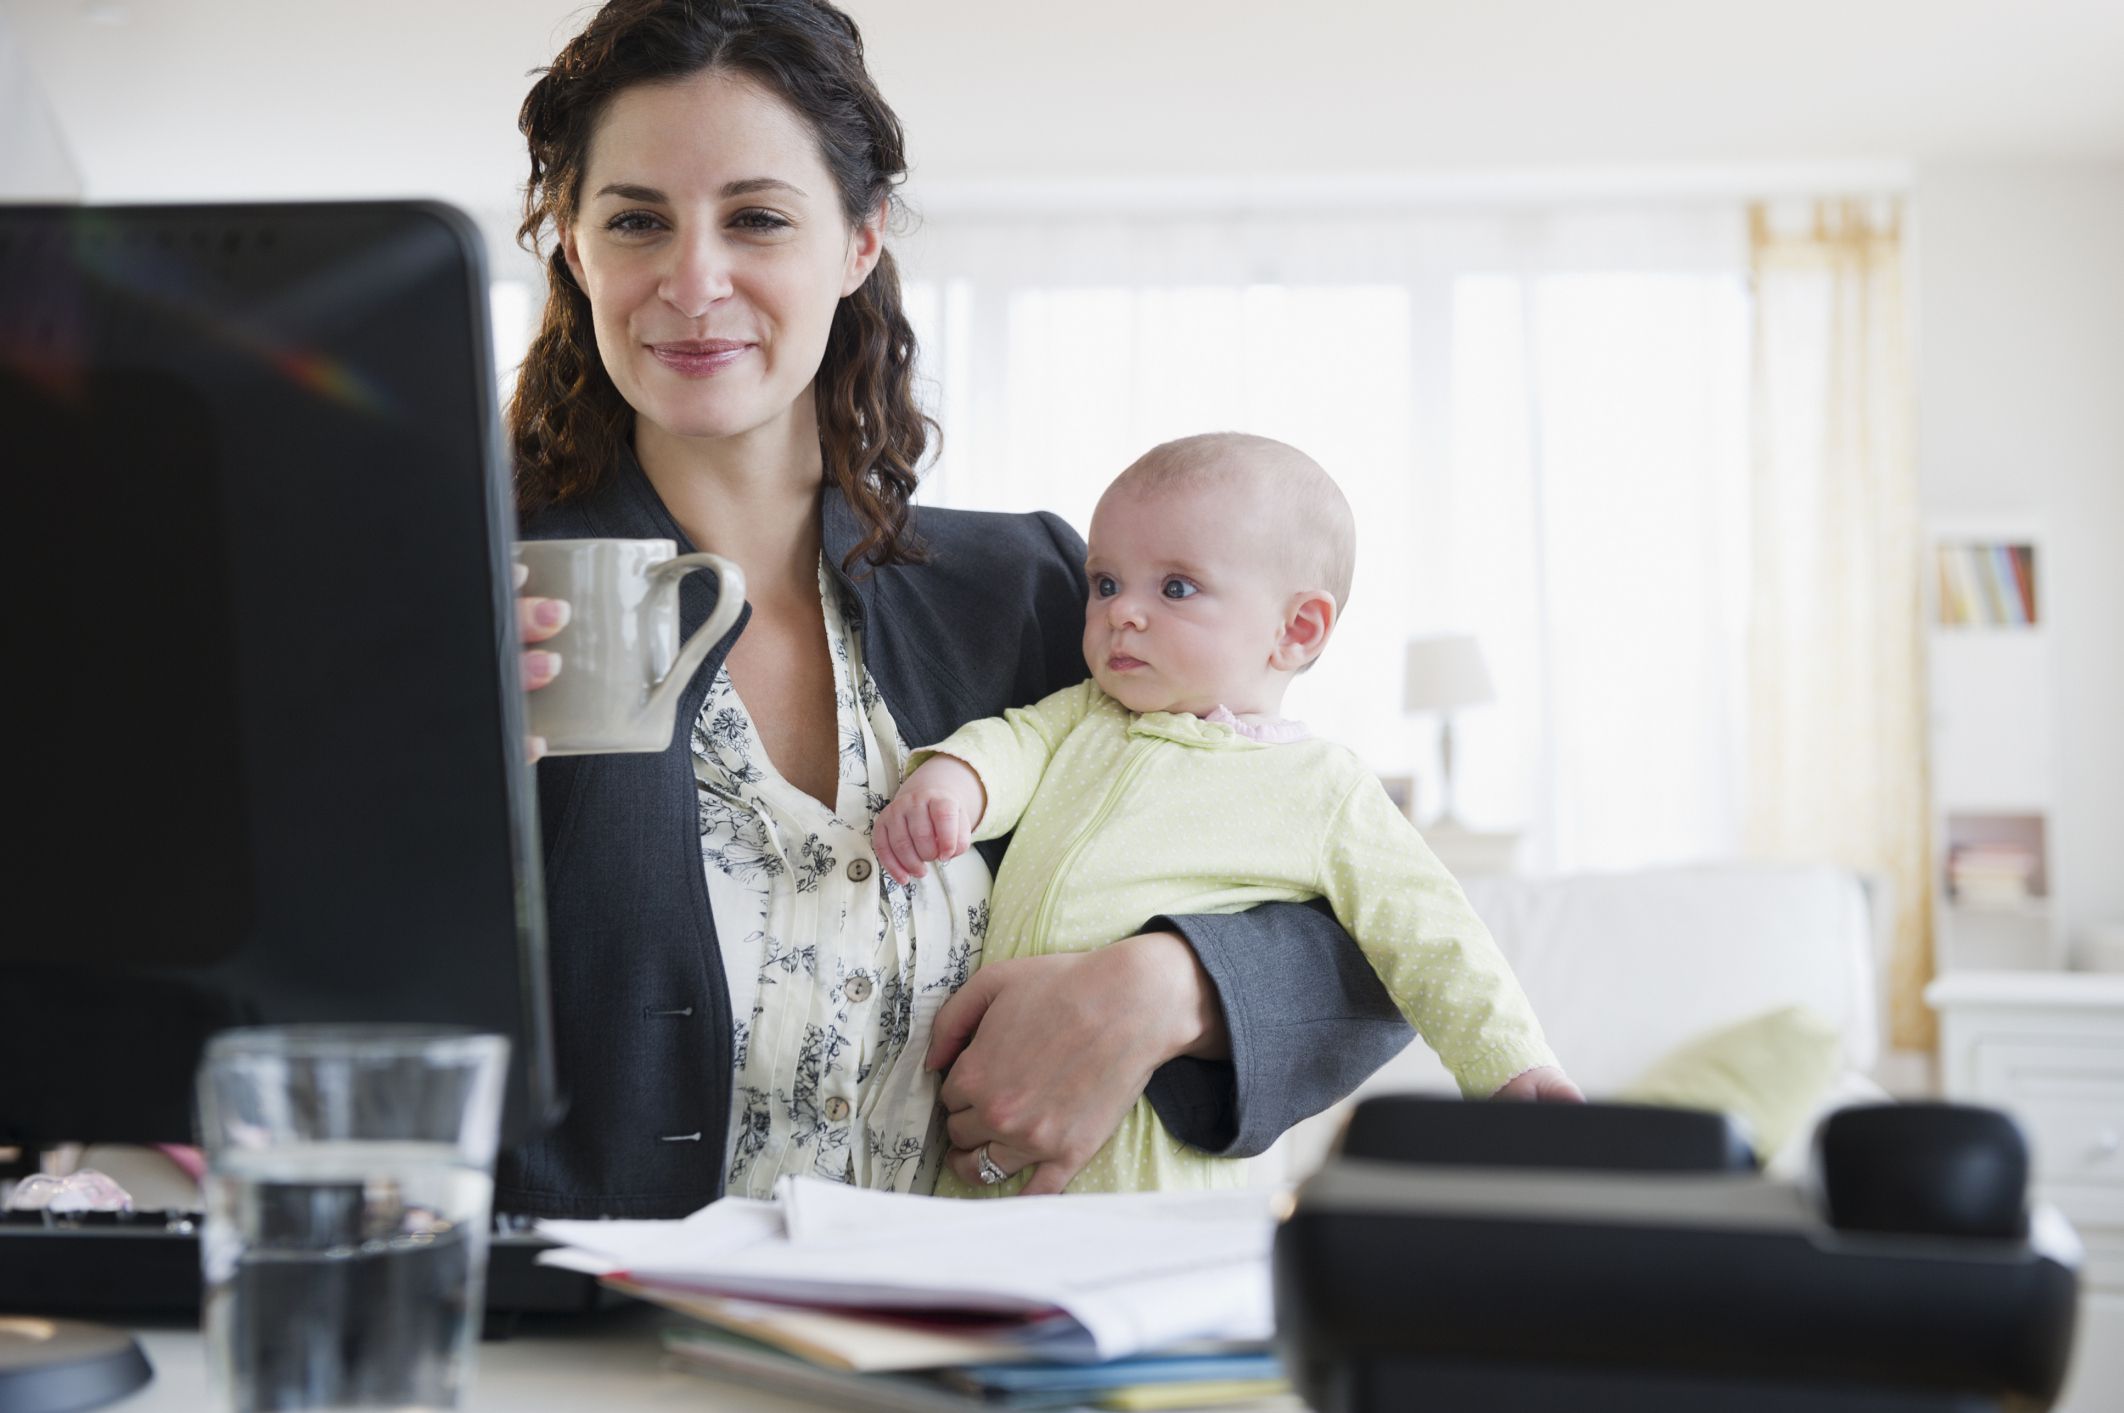 HomeBased Business Ideas for Moms